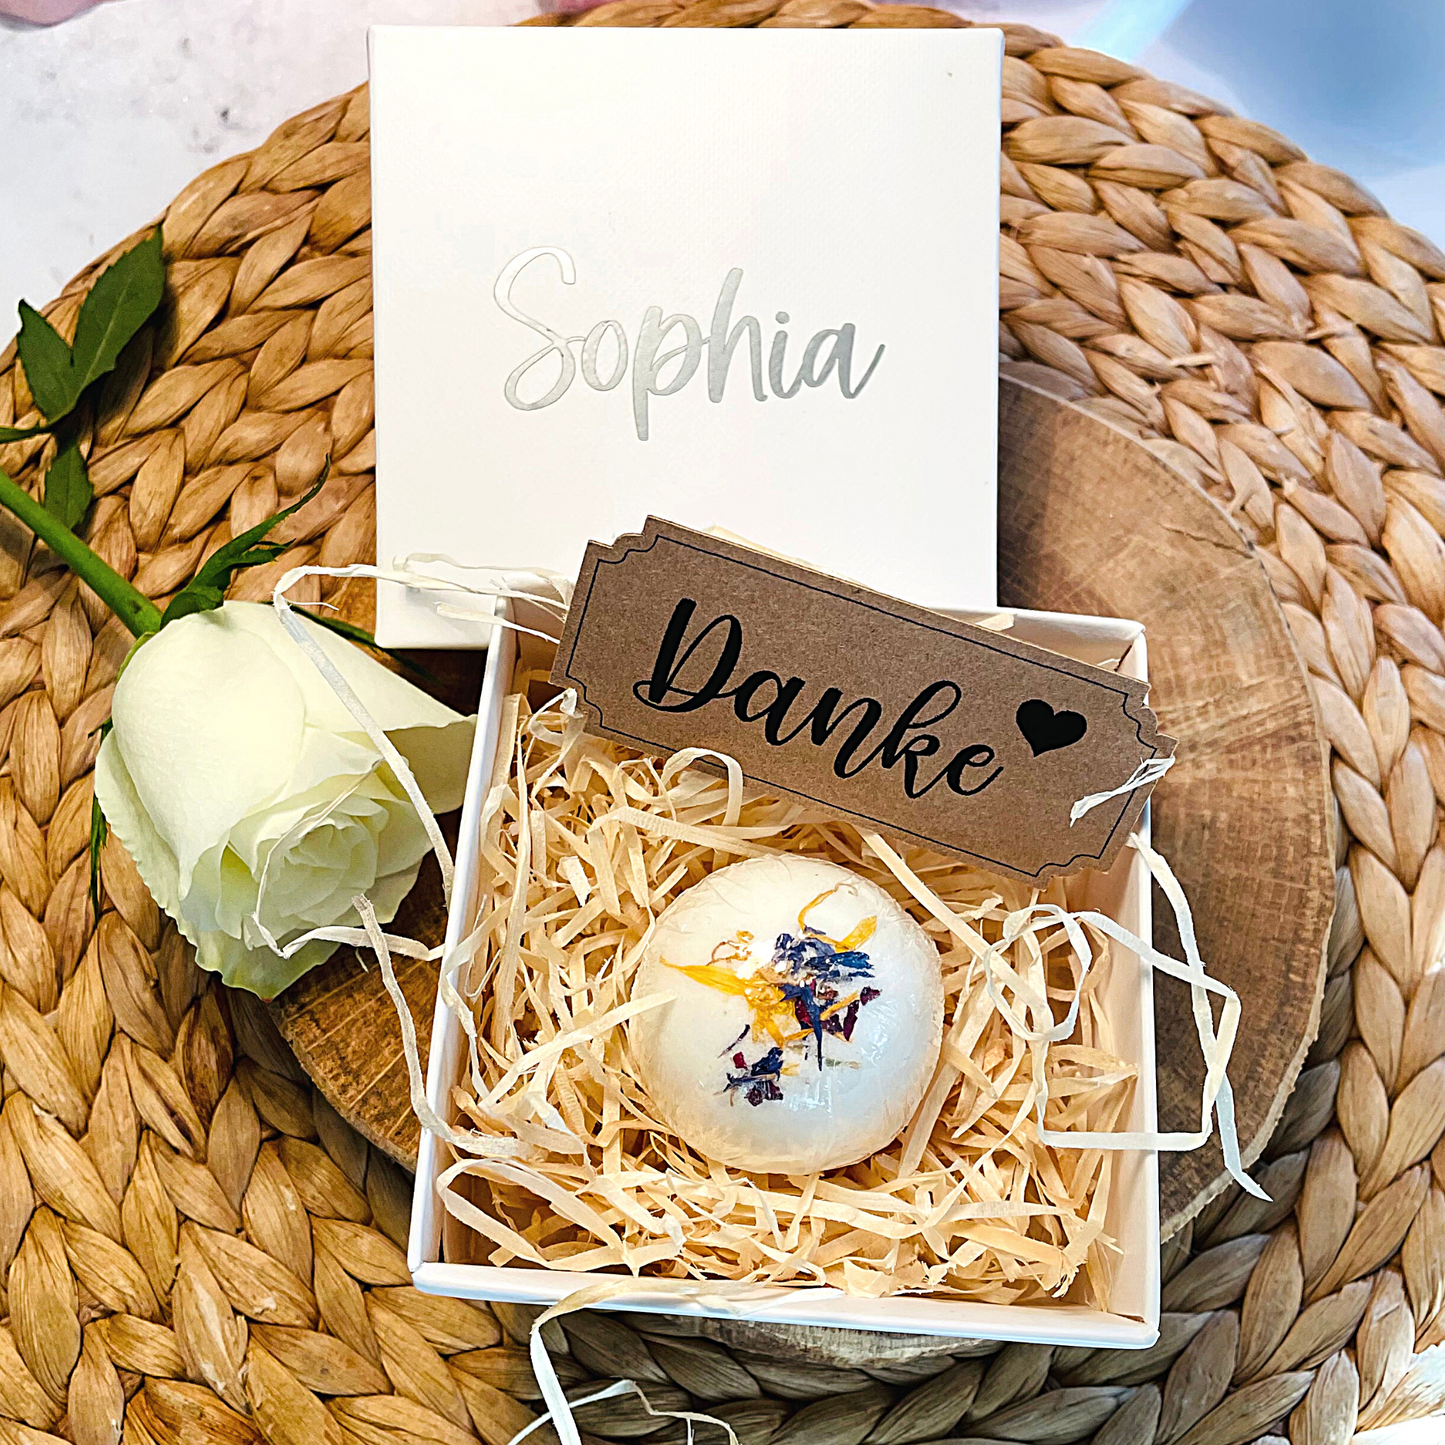 Geschenk - pflegende Badekugel Blüten - vegan - in personalisierter Geschenkbox - Muttertag - Geburtstag - Dankeschön